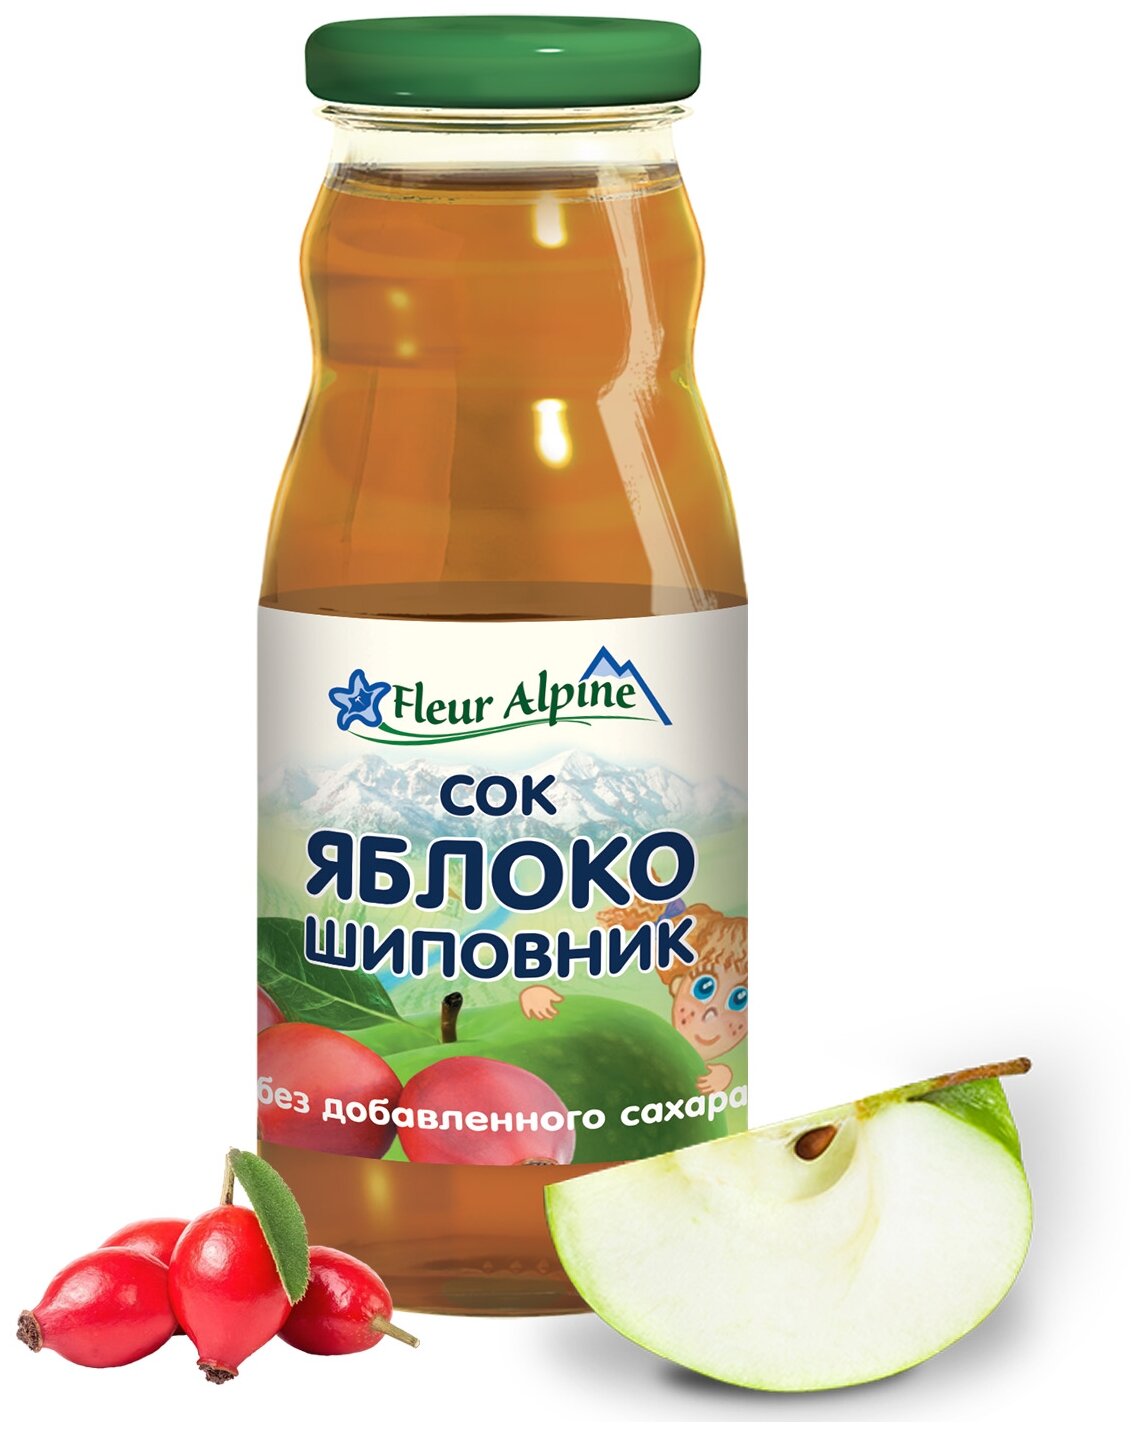 Флёр Альпин - сок яблоко-шиповник, 5 мес., 200 мл, 8 штук - фотография № 2